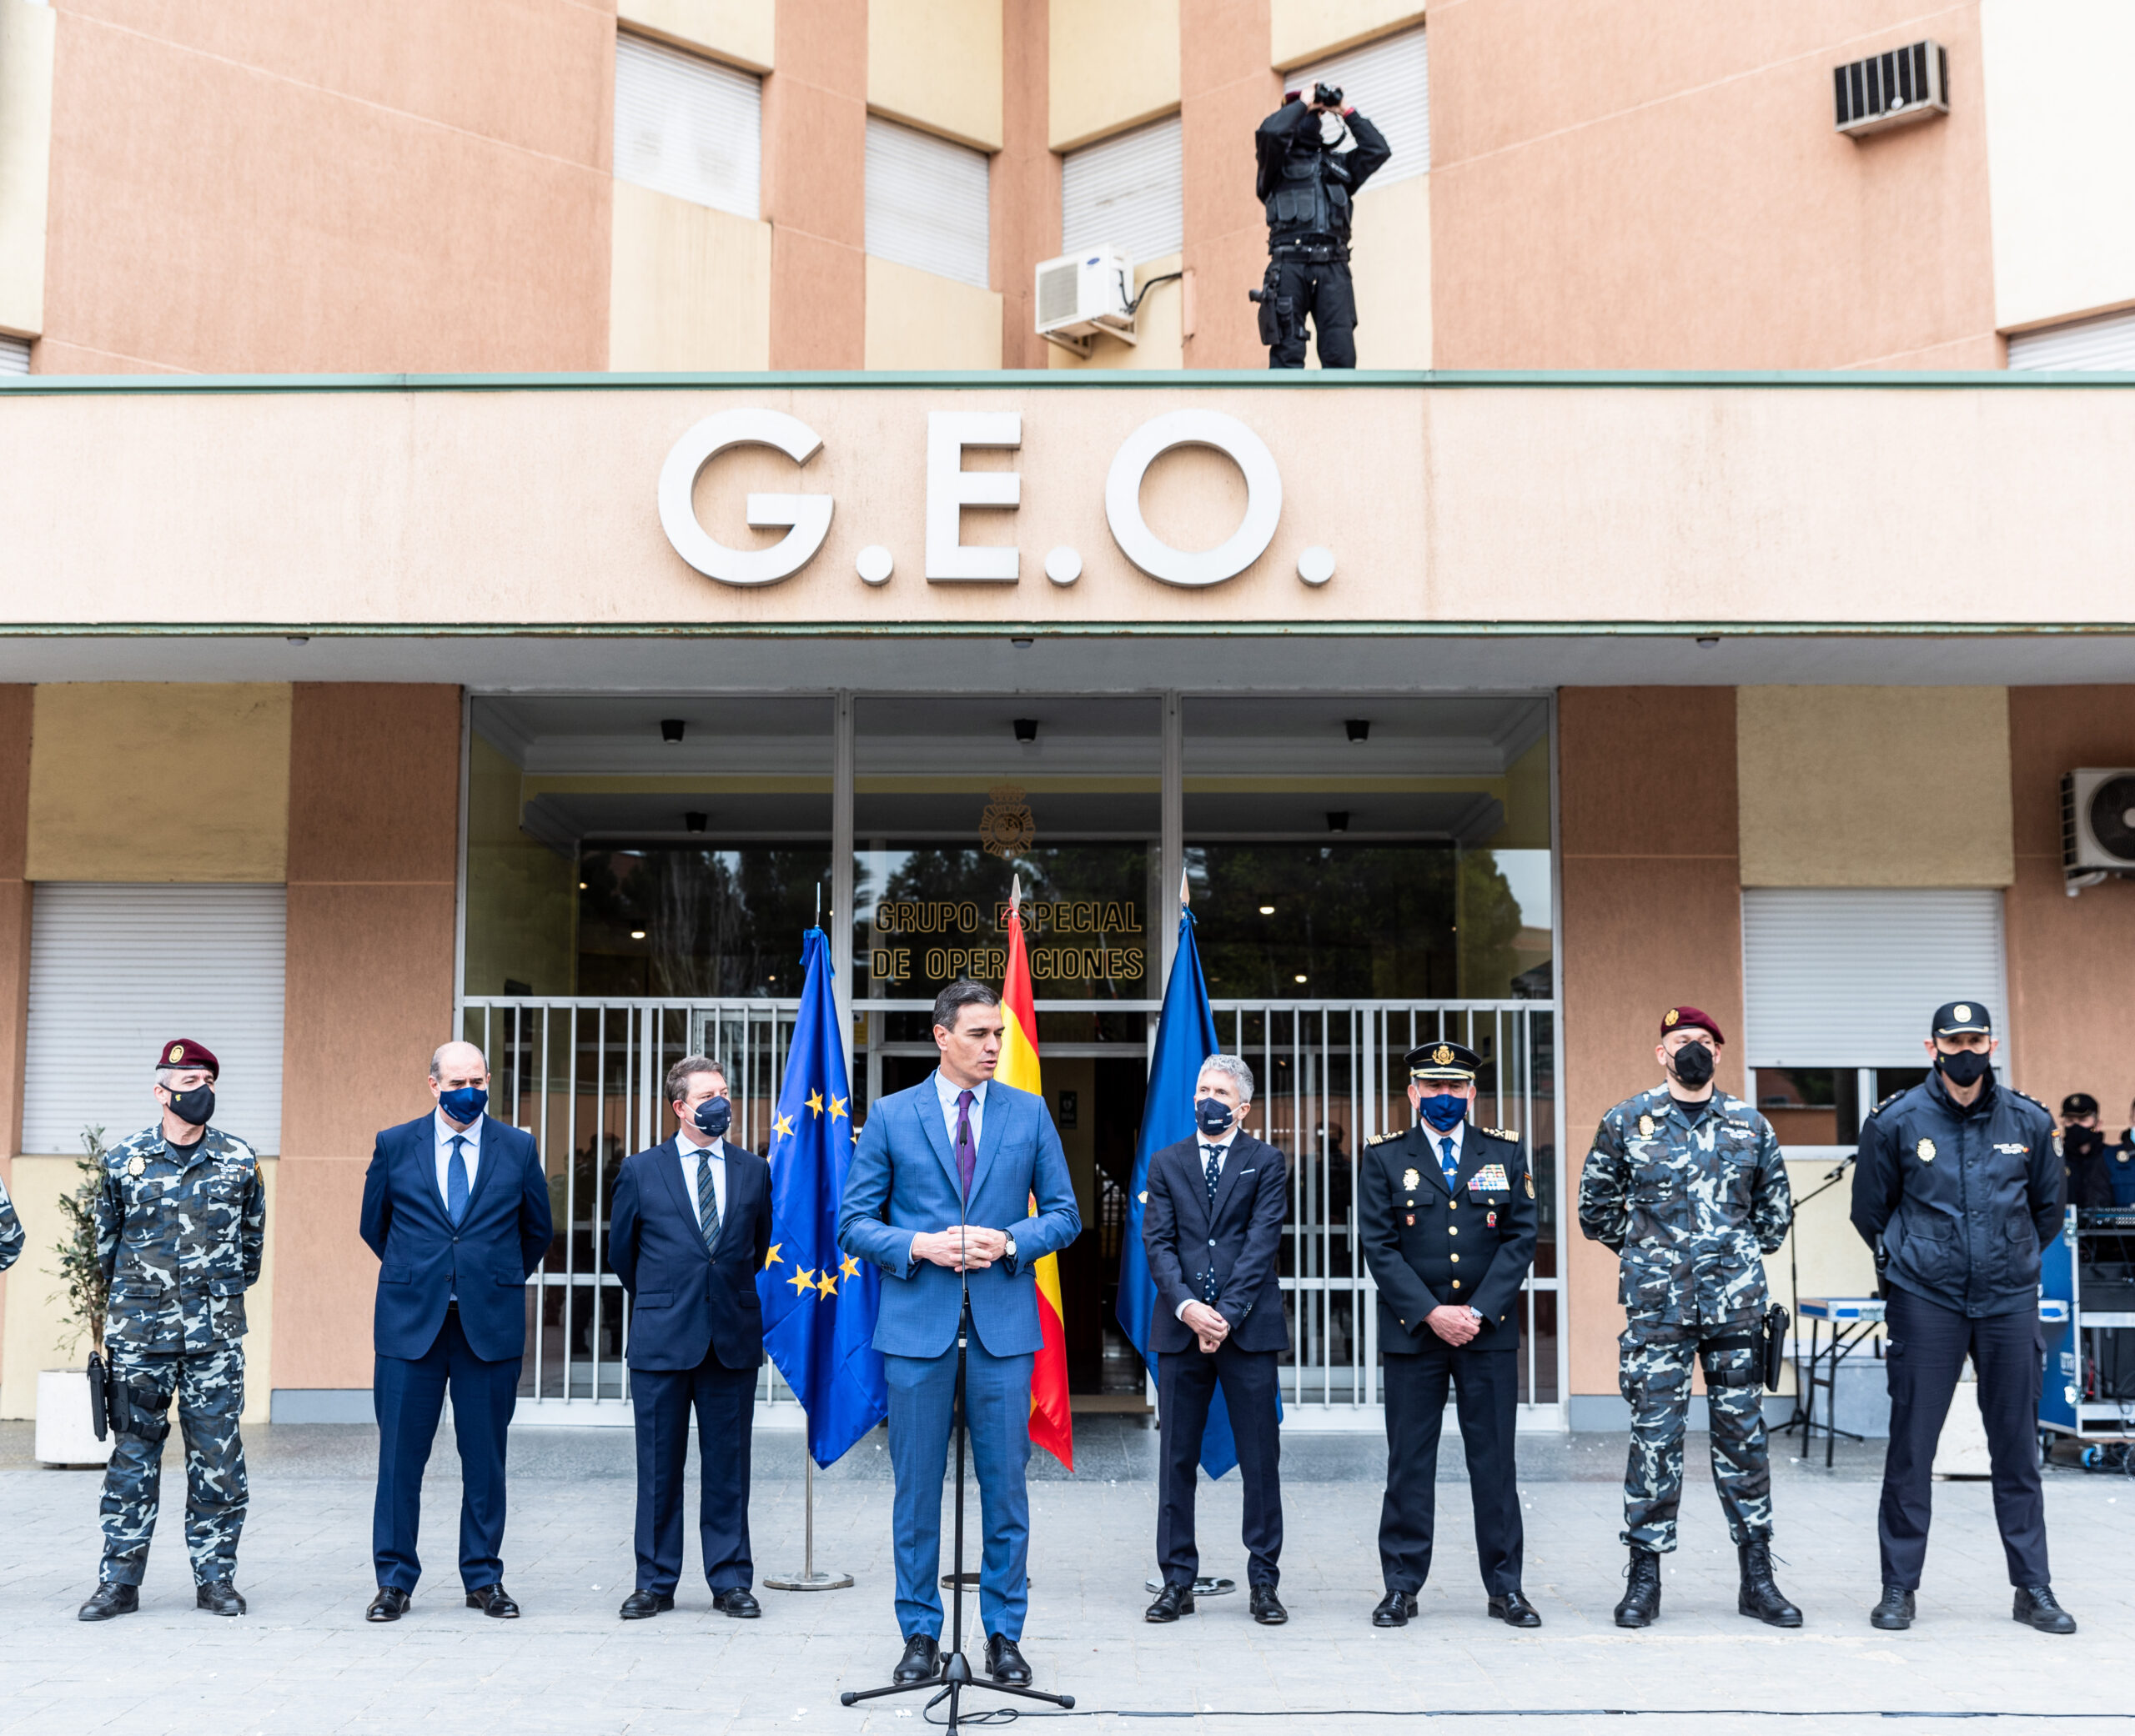 Un "geo" otea el cielo con unos prismáticos mientras habla el presidente del Gobierno en el acuartelamiento del GEO en Guadalajara. (Foto: Rafael Martín / EP)